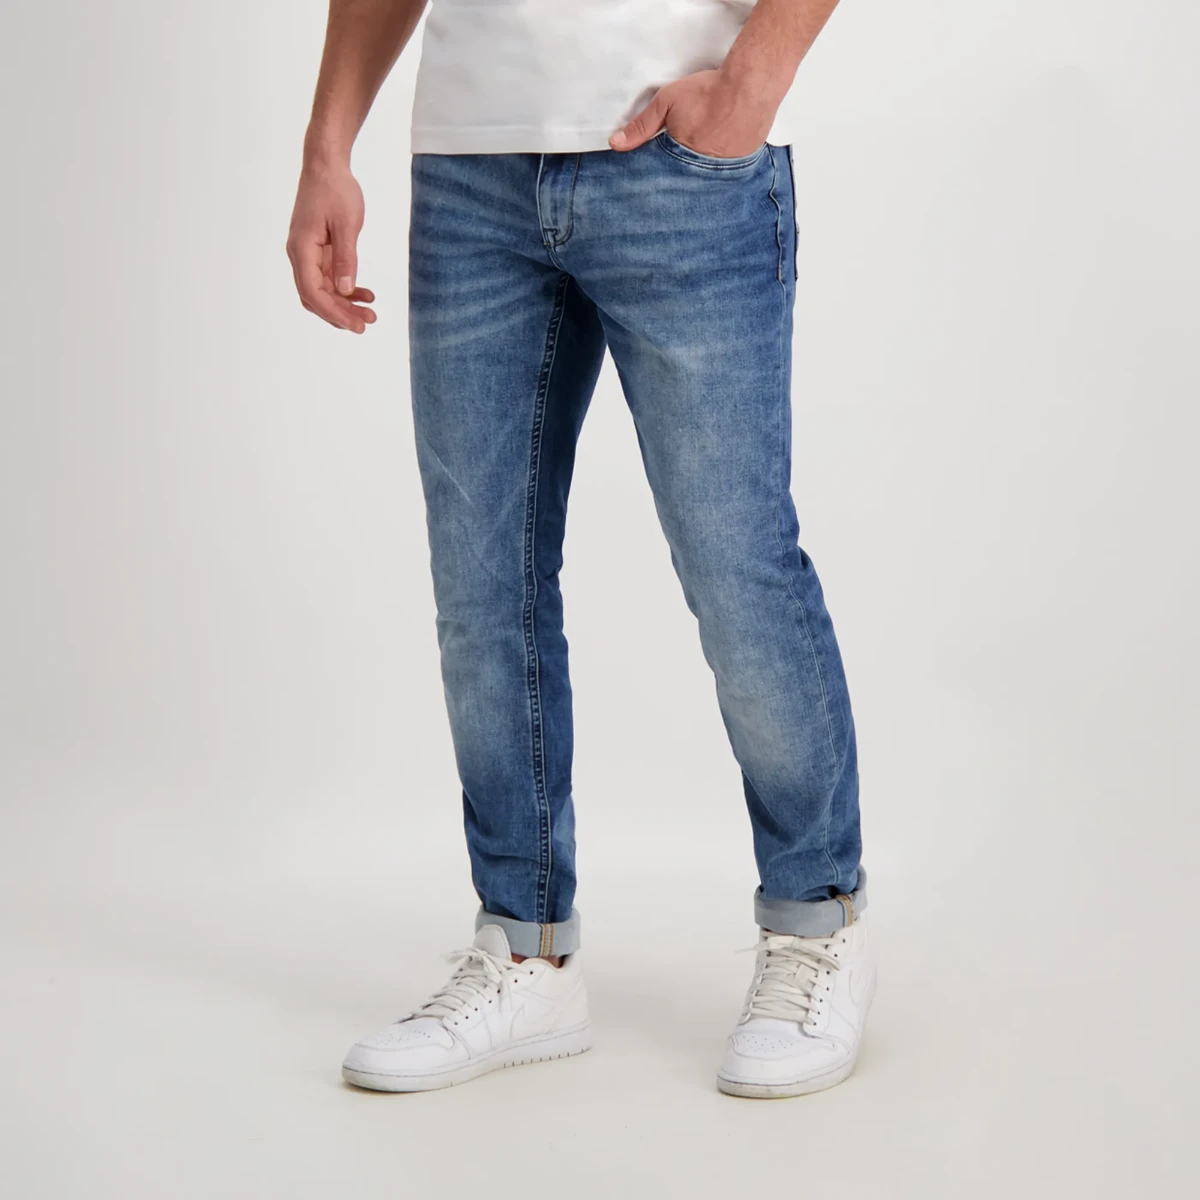 bedreiging toediening Herstellen Jogg Jeans Heren | Voor een comfortabel gevoel | broekenbinkie.com